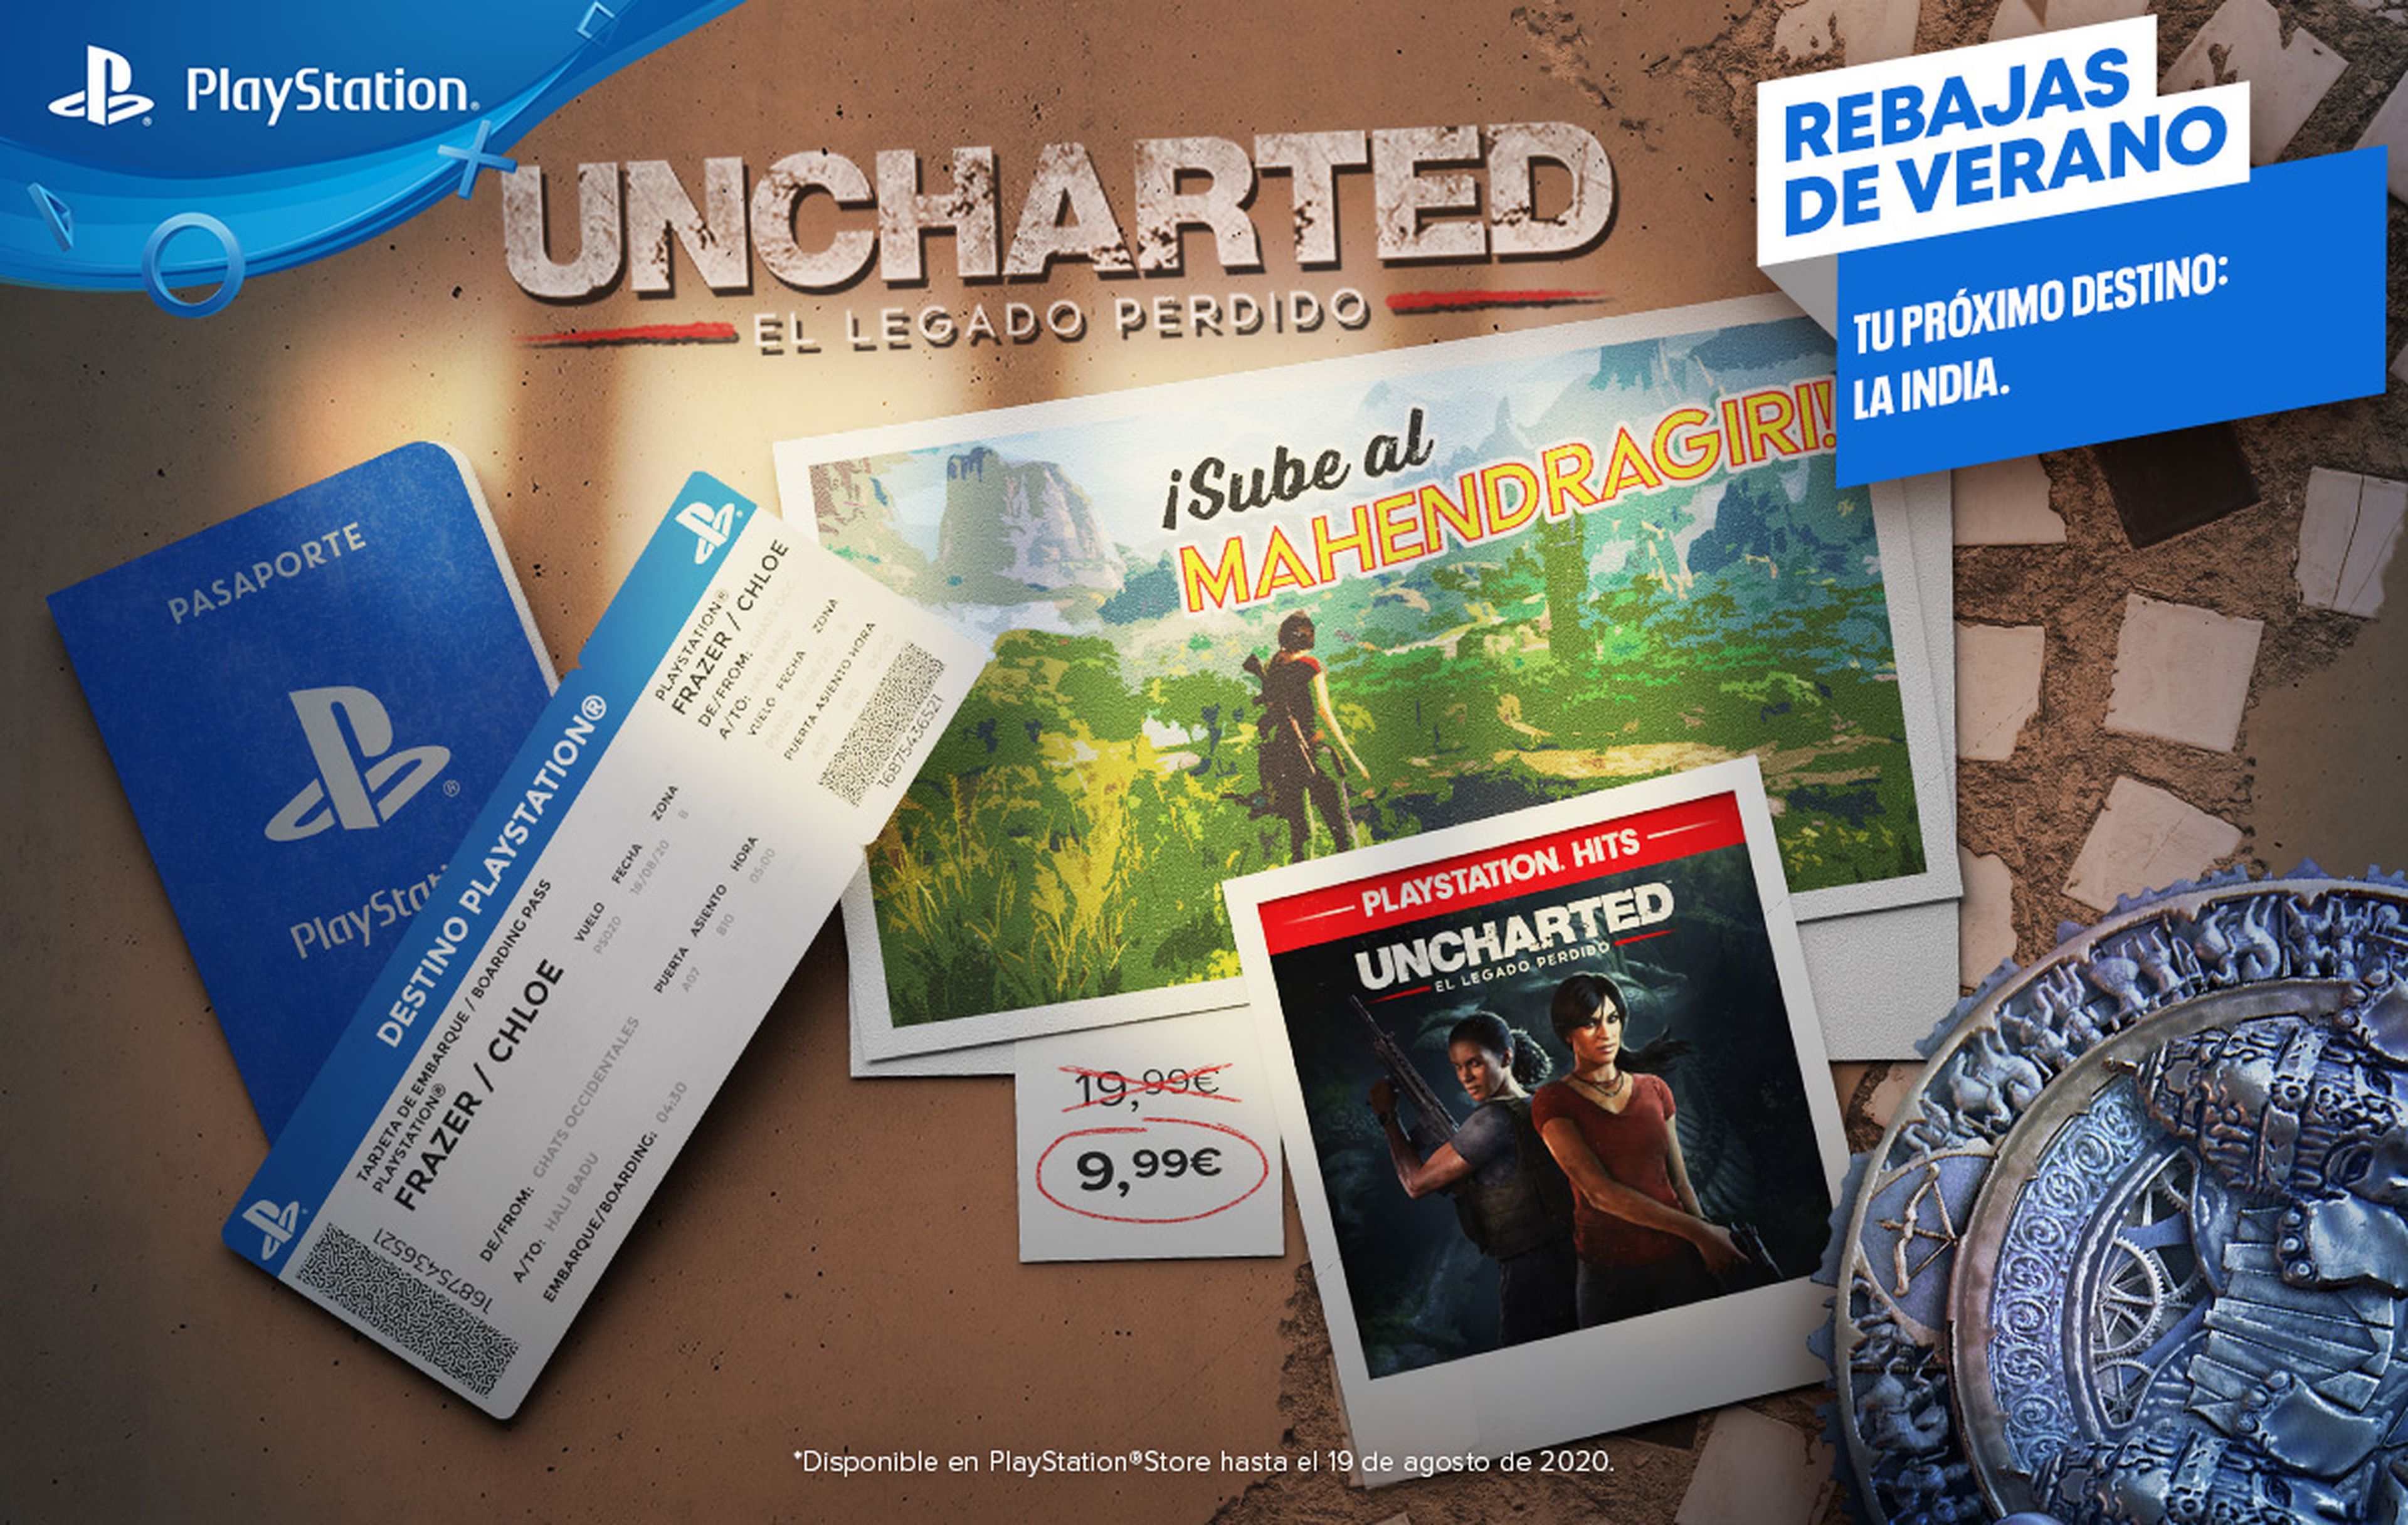 Rebajas de verano PlayStation Uncharted el Legado Perdido